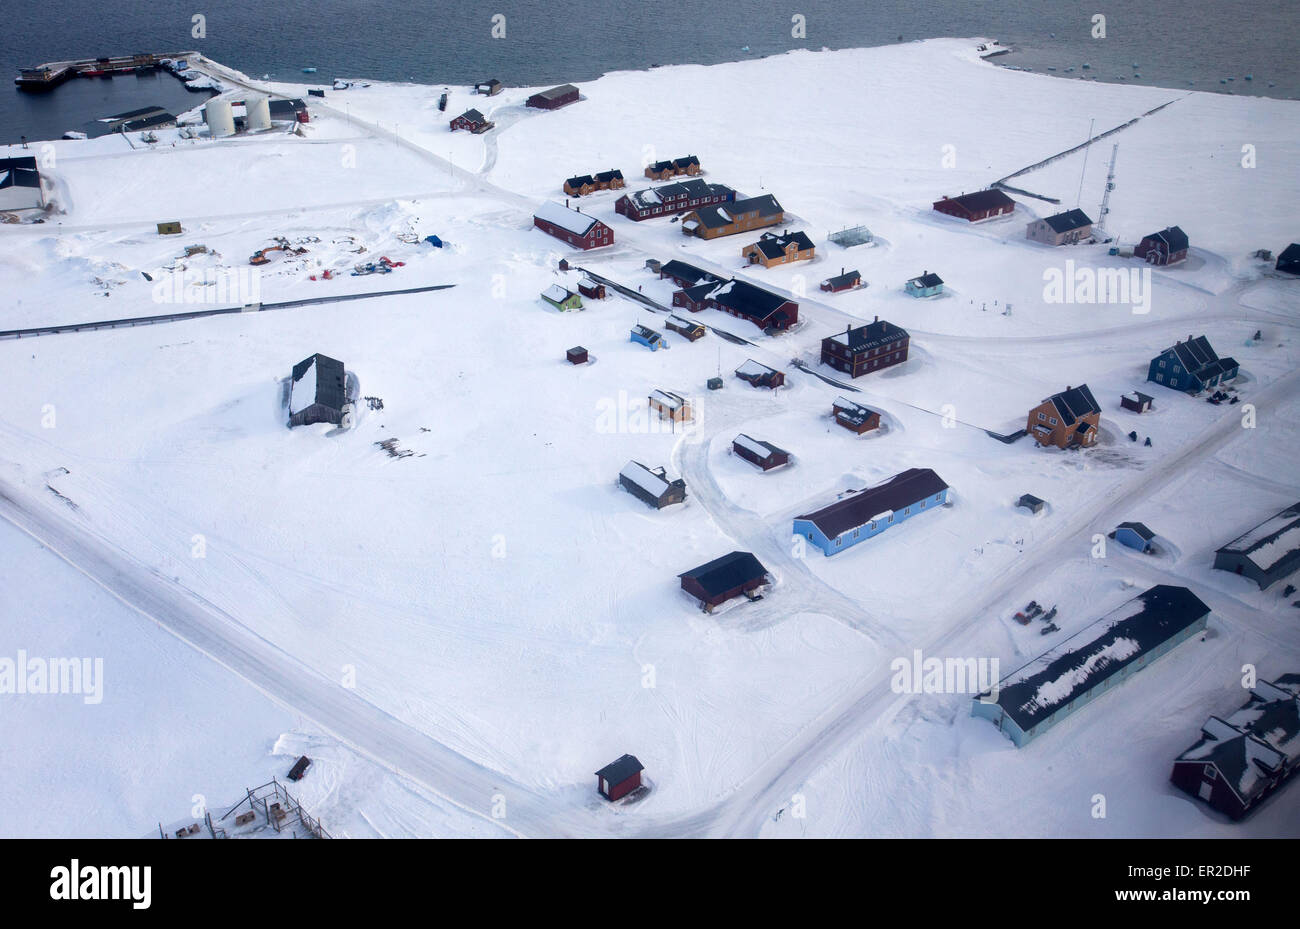 Una veduta aerea sparato da un aereo della stazione di ricerca Kings Bay in Ny-Alesund sull isola Spitsbergen, Norvegia, 10 aprile 2015. Arctic stazioni di ricerca della Norvegia, Germania, Francia e Cina presidiata durante tutto l'anno sono attualmente operative sui terreni della ex sito minerario sull'arcipelago delle Svalbard. L'Italia, Gran Bretagna e Giappone mantenere stazioni di ricerca per periodi di tempo limitati. Scienziati provenienti da Spagna e i Paesi Bassi utilizzano alcuni piccoli edifici. Il mantenuto congiuntamente le infrastrutture di Kings Bay con le sue marine nei laboratori di ricerca, Caff, strutture portuali e worksho Foto Stock